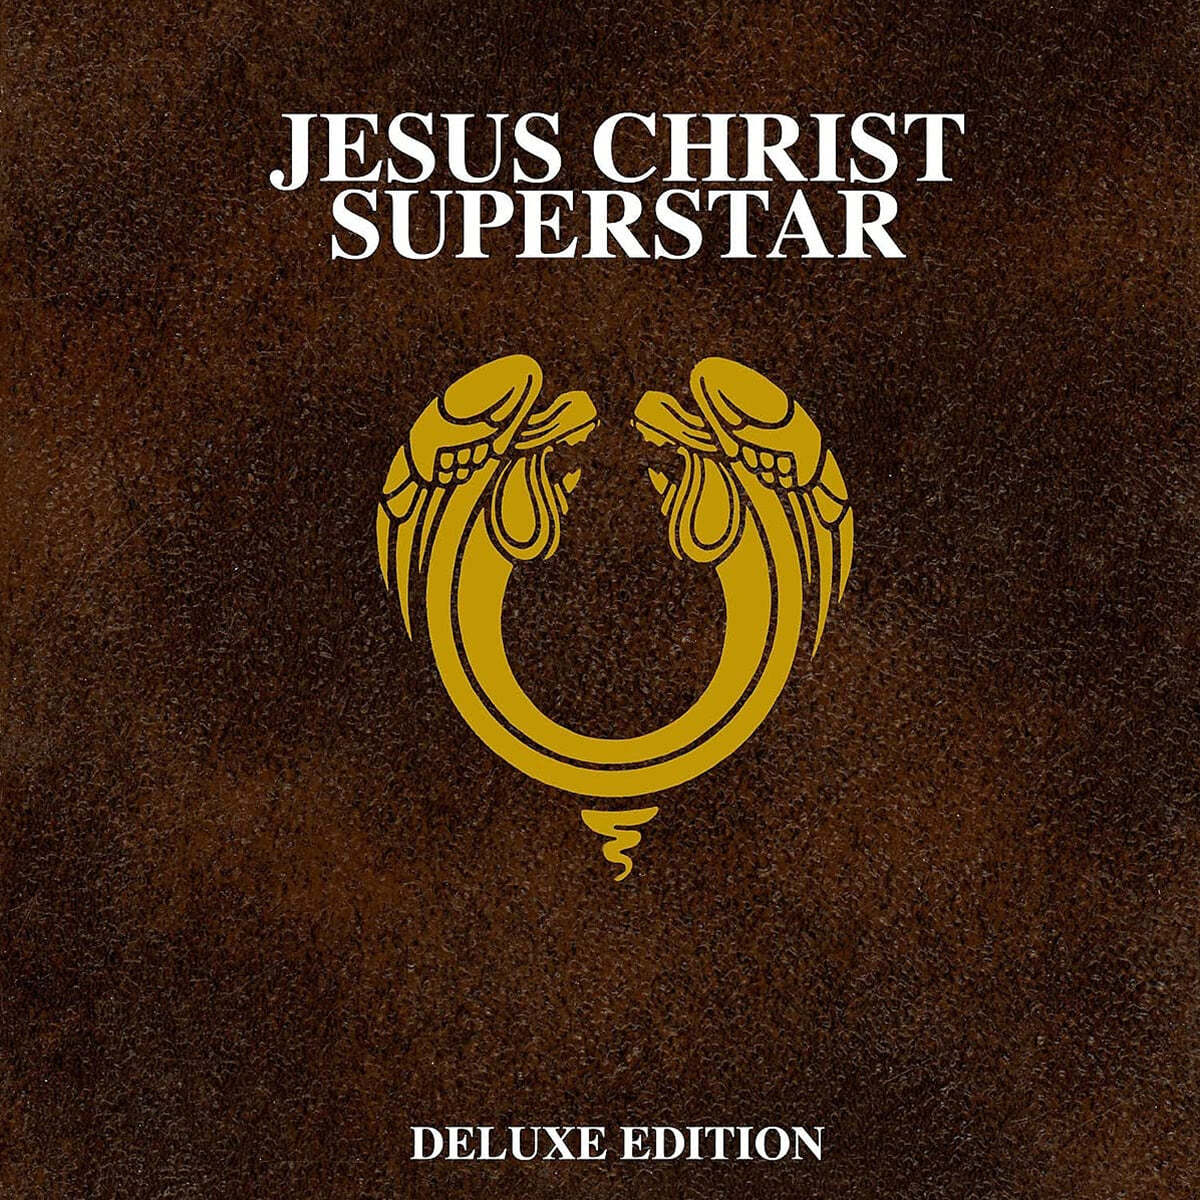 지저스 크라이스트 슈퍼스타 뮤지컬음악 (Jesus Christ Superstar OST by Andrew Lloyd Webber / Tim Rice) 